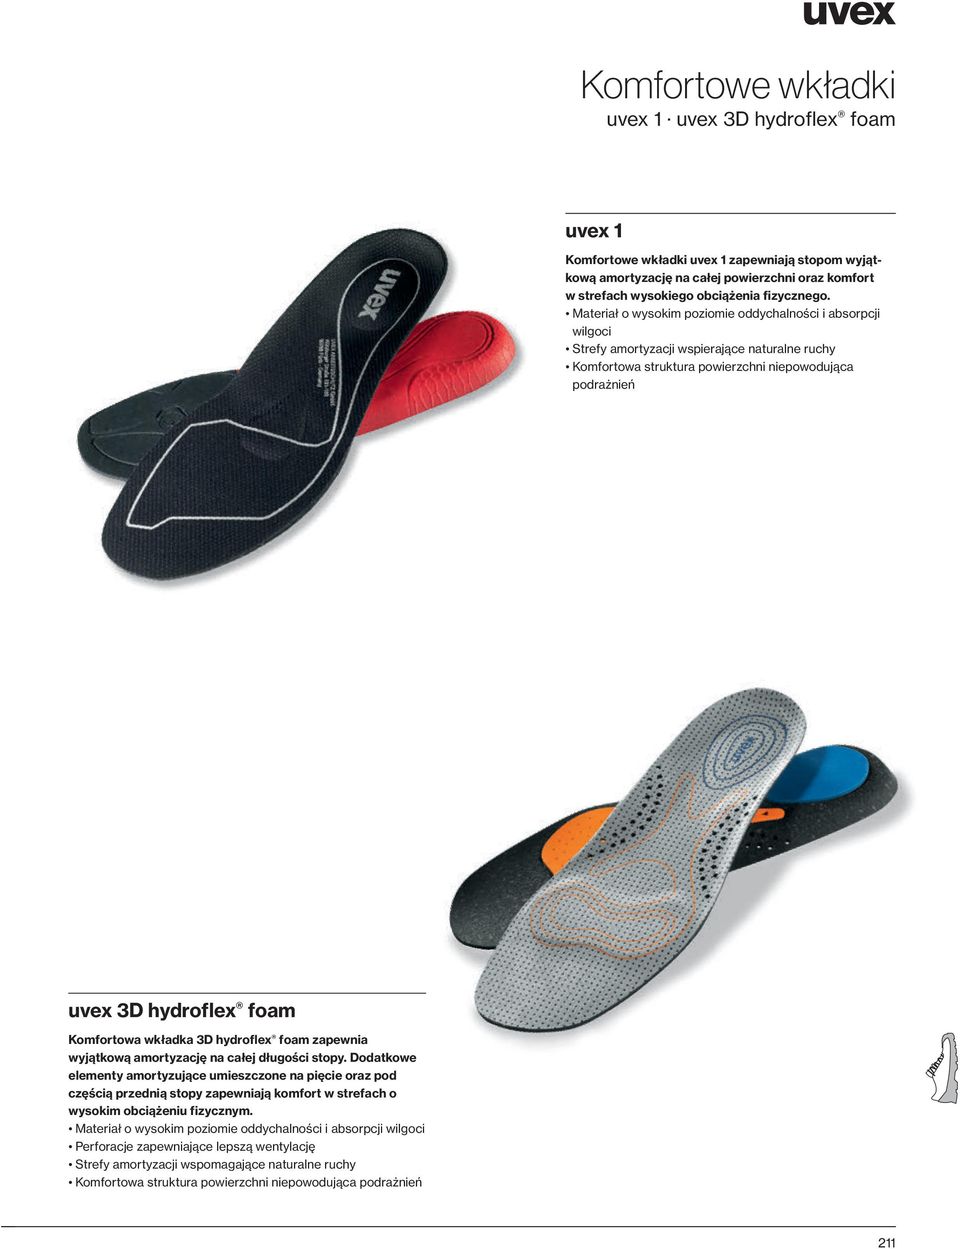 Komfortowa wkładka 3D hydroflex foam zapewnia wyjątkową amortyzację na całej długości stopy.